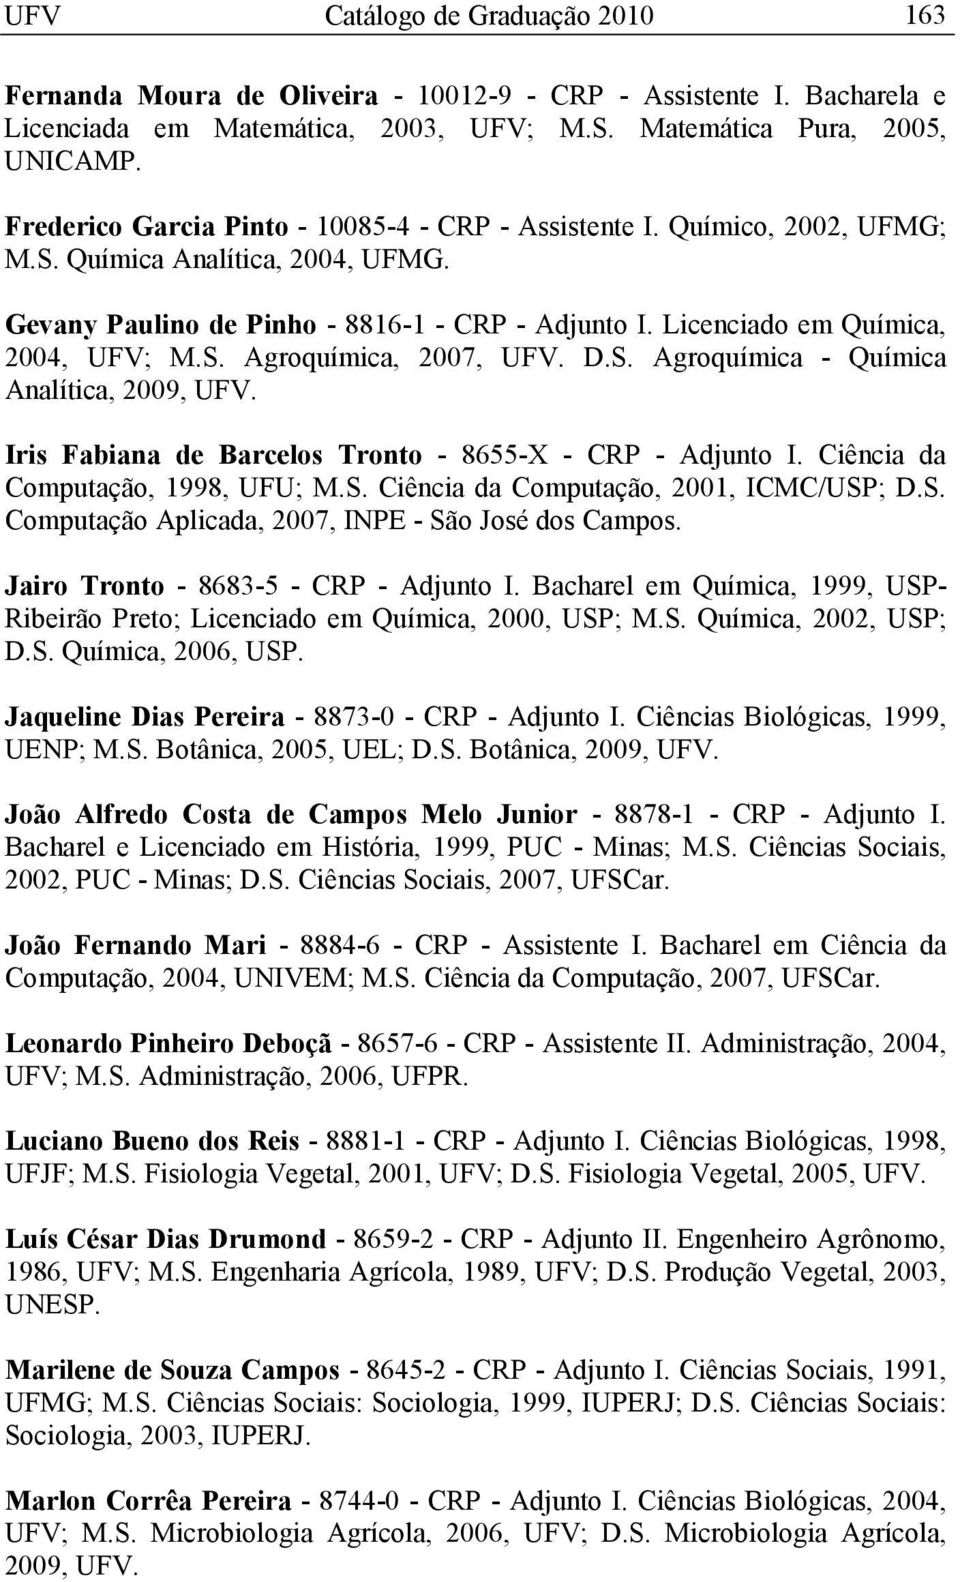 S. Agroquímica, 2007, UFV. D.S. Agroquímica - Química Analítica, 2009, UFV. Iris Fabiana de Barcelos Tronto - 8655-X - CRP - Adjunto I. Ciência da Computação, 1998, UFU; M.S. Ciência da Computação, 2001, ICMC/USP; D.